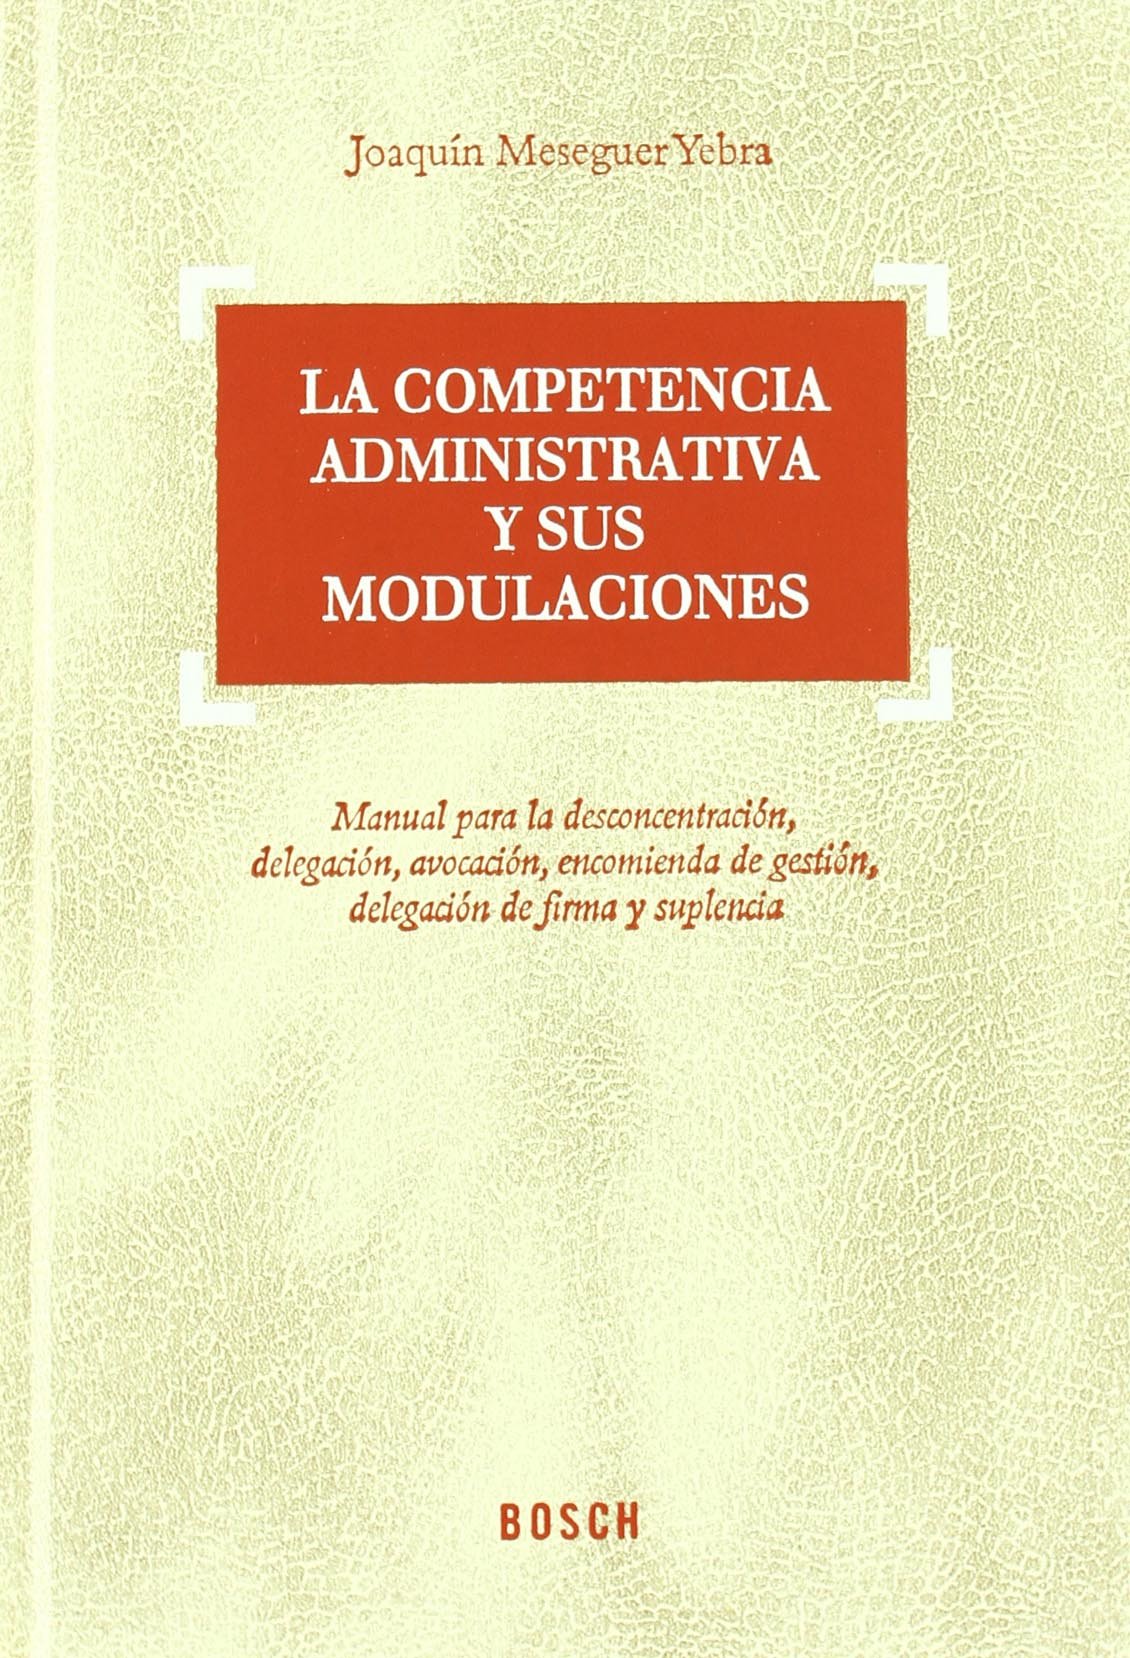 La competencia administrativa y sus modulaciones